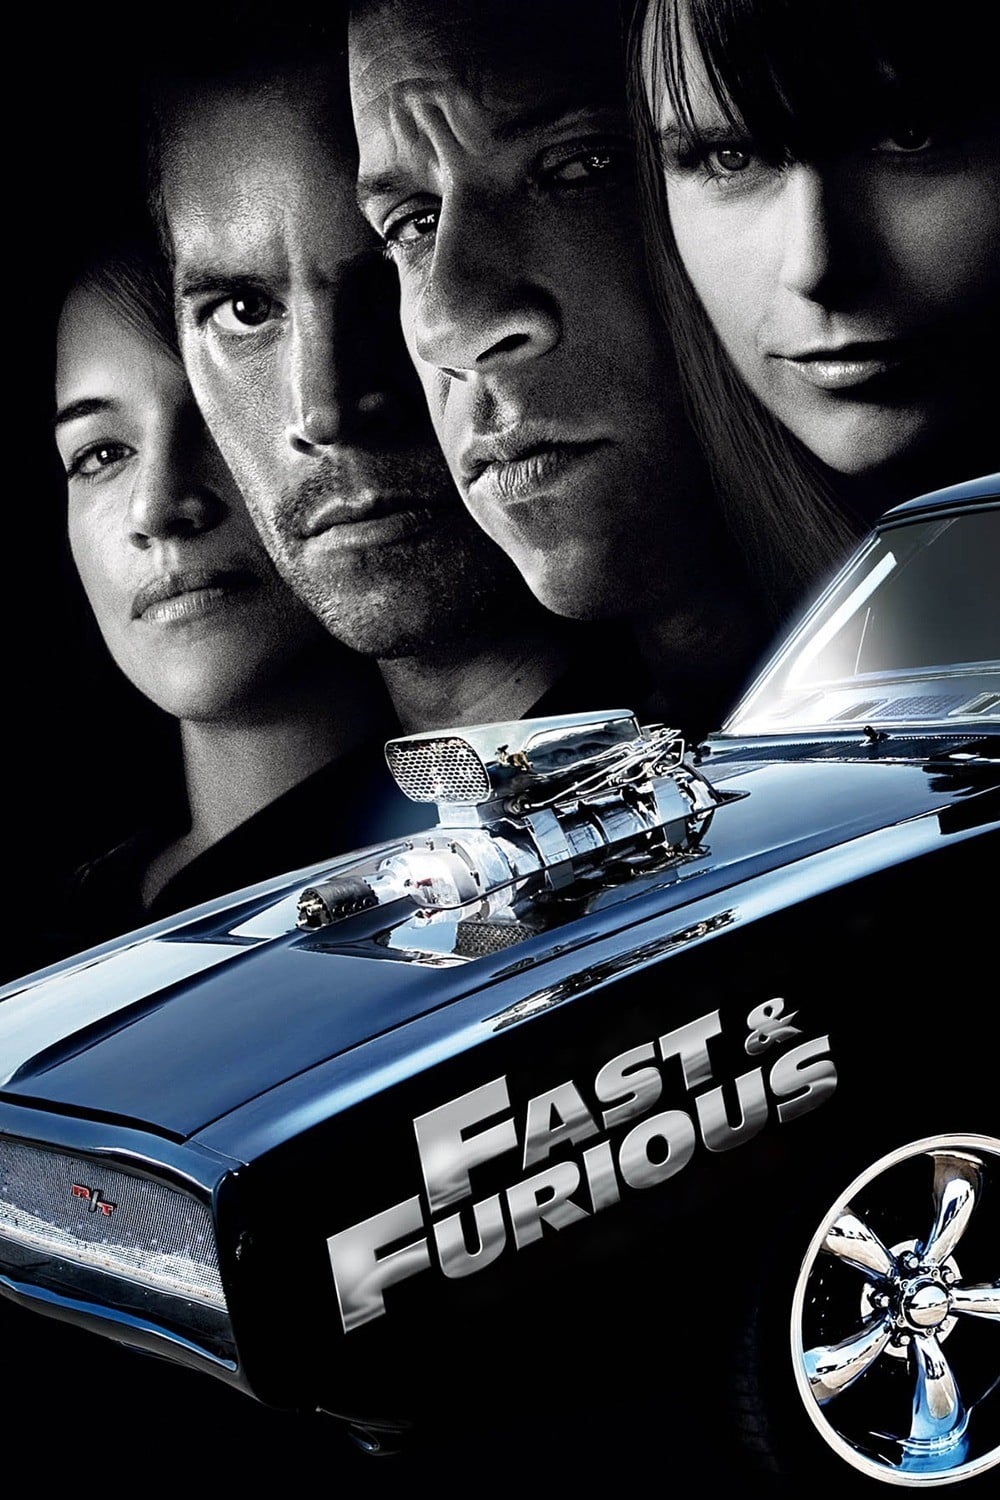 Fast & Furious: Aún más rápido